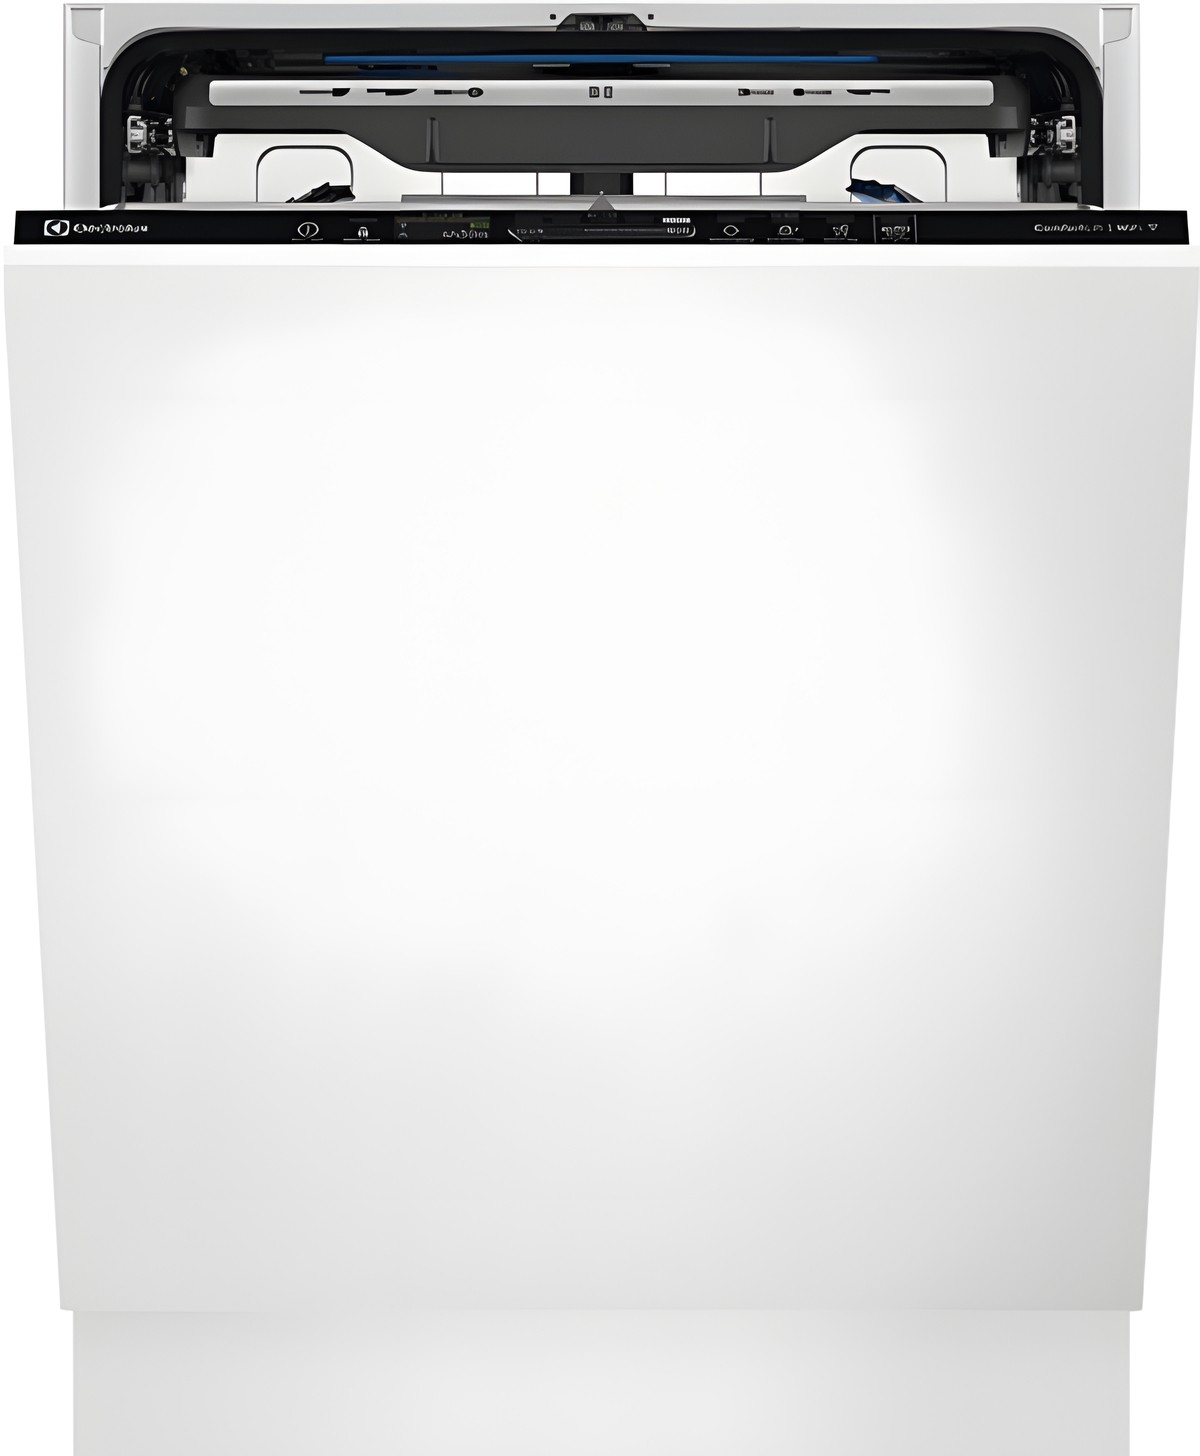 Посудомоечная машина Electrolux EEC87310W в интернет-магазине, главное фото